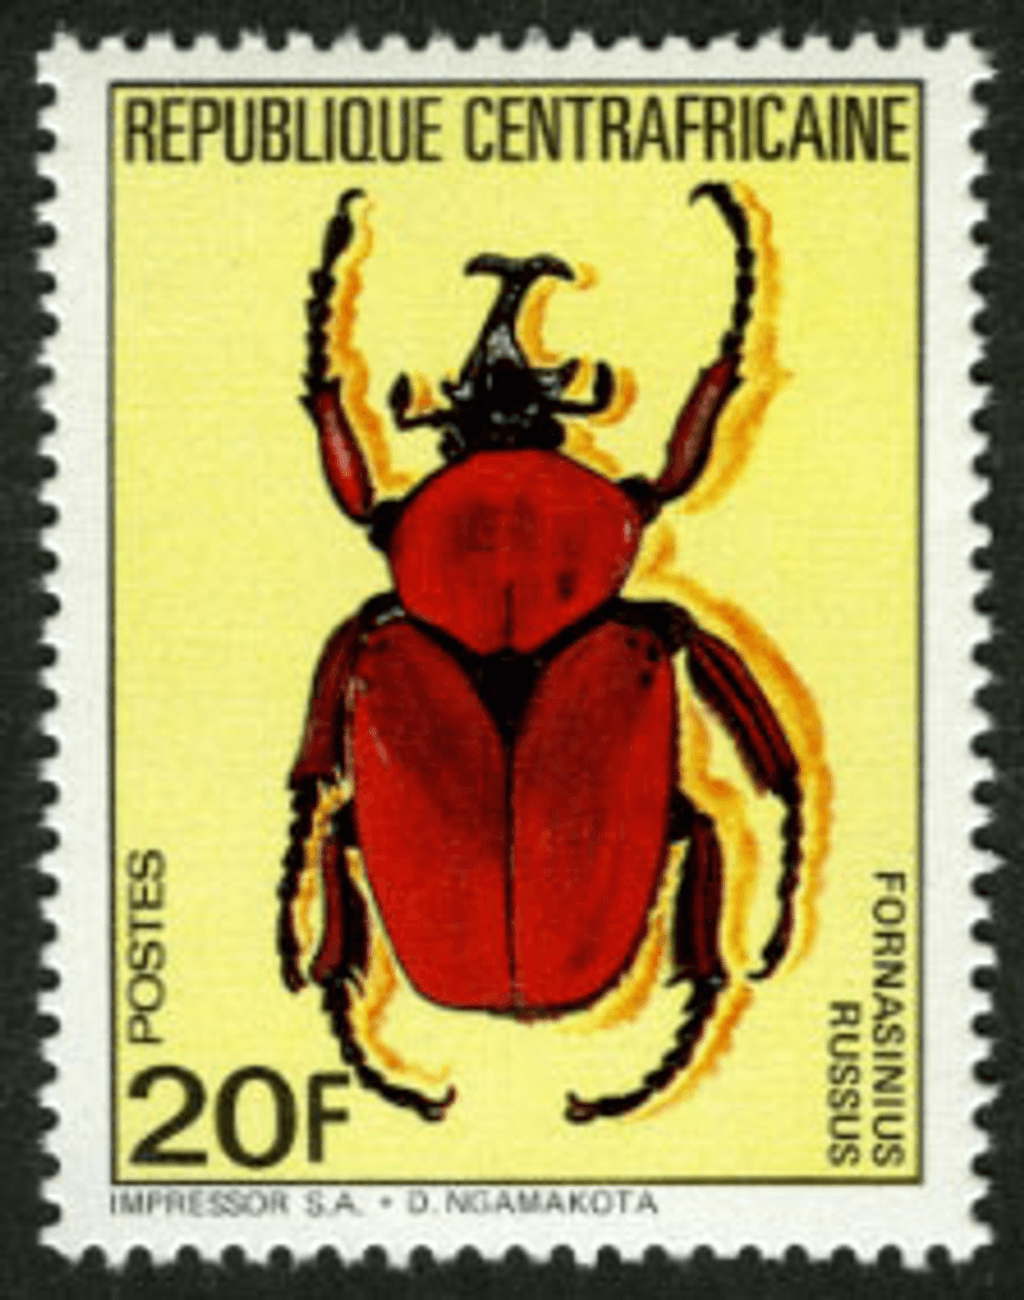 Beetles 1985